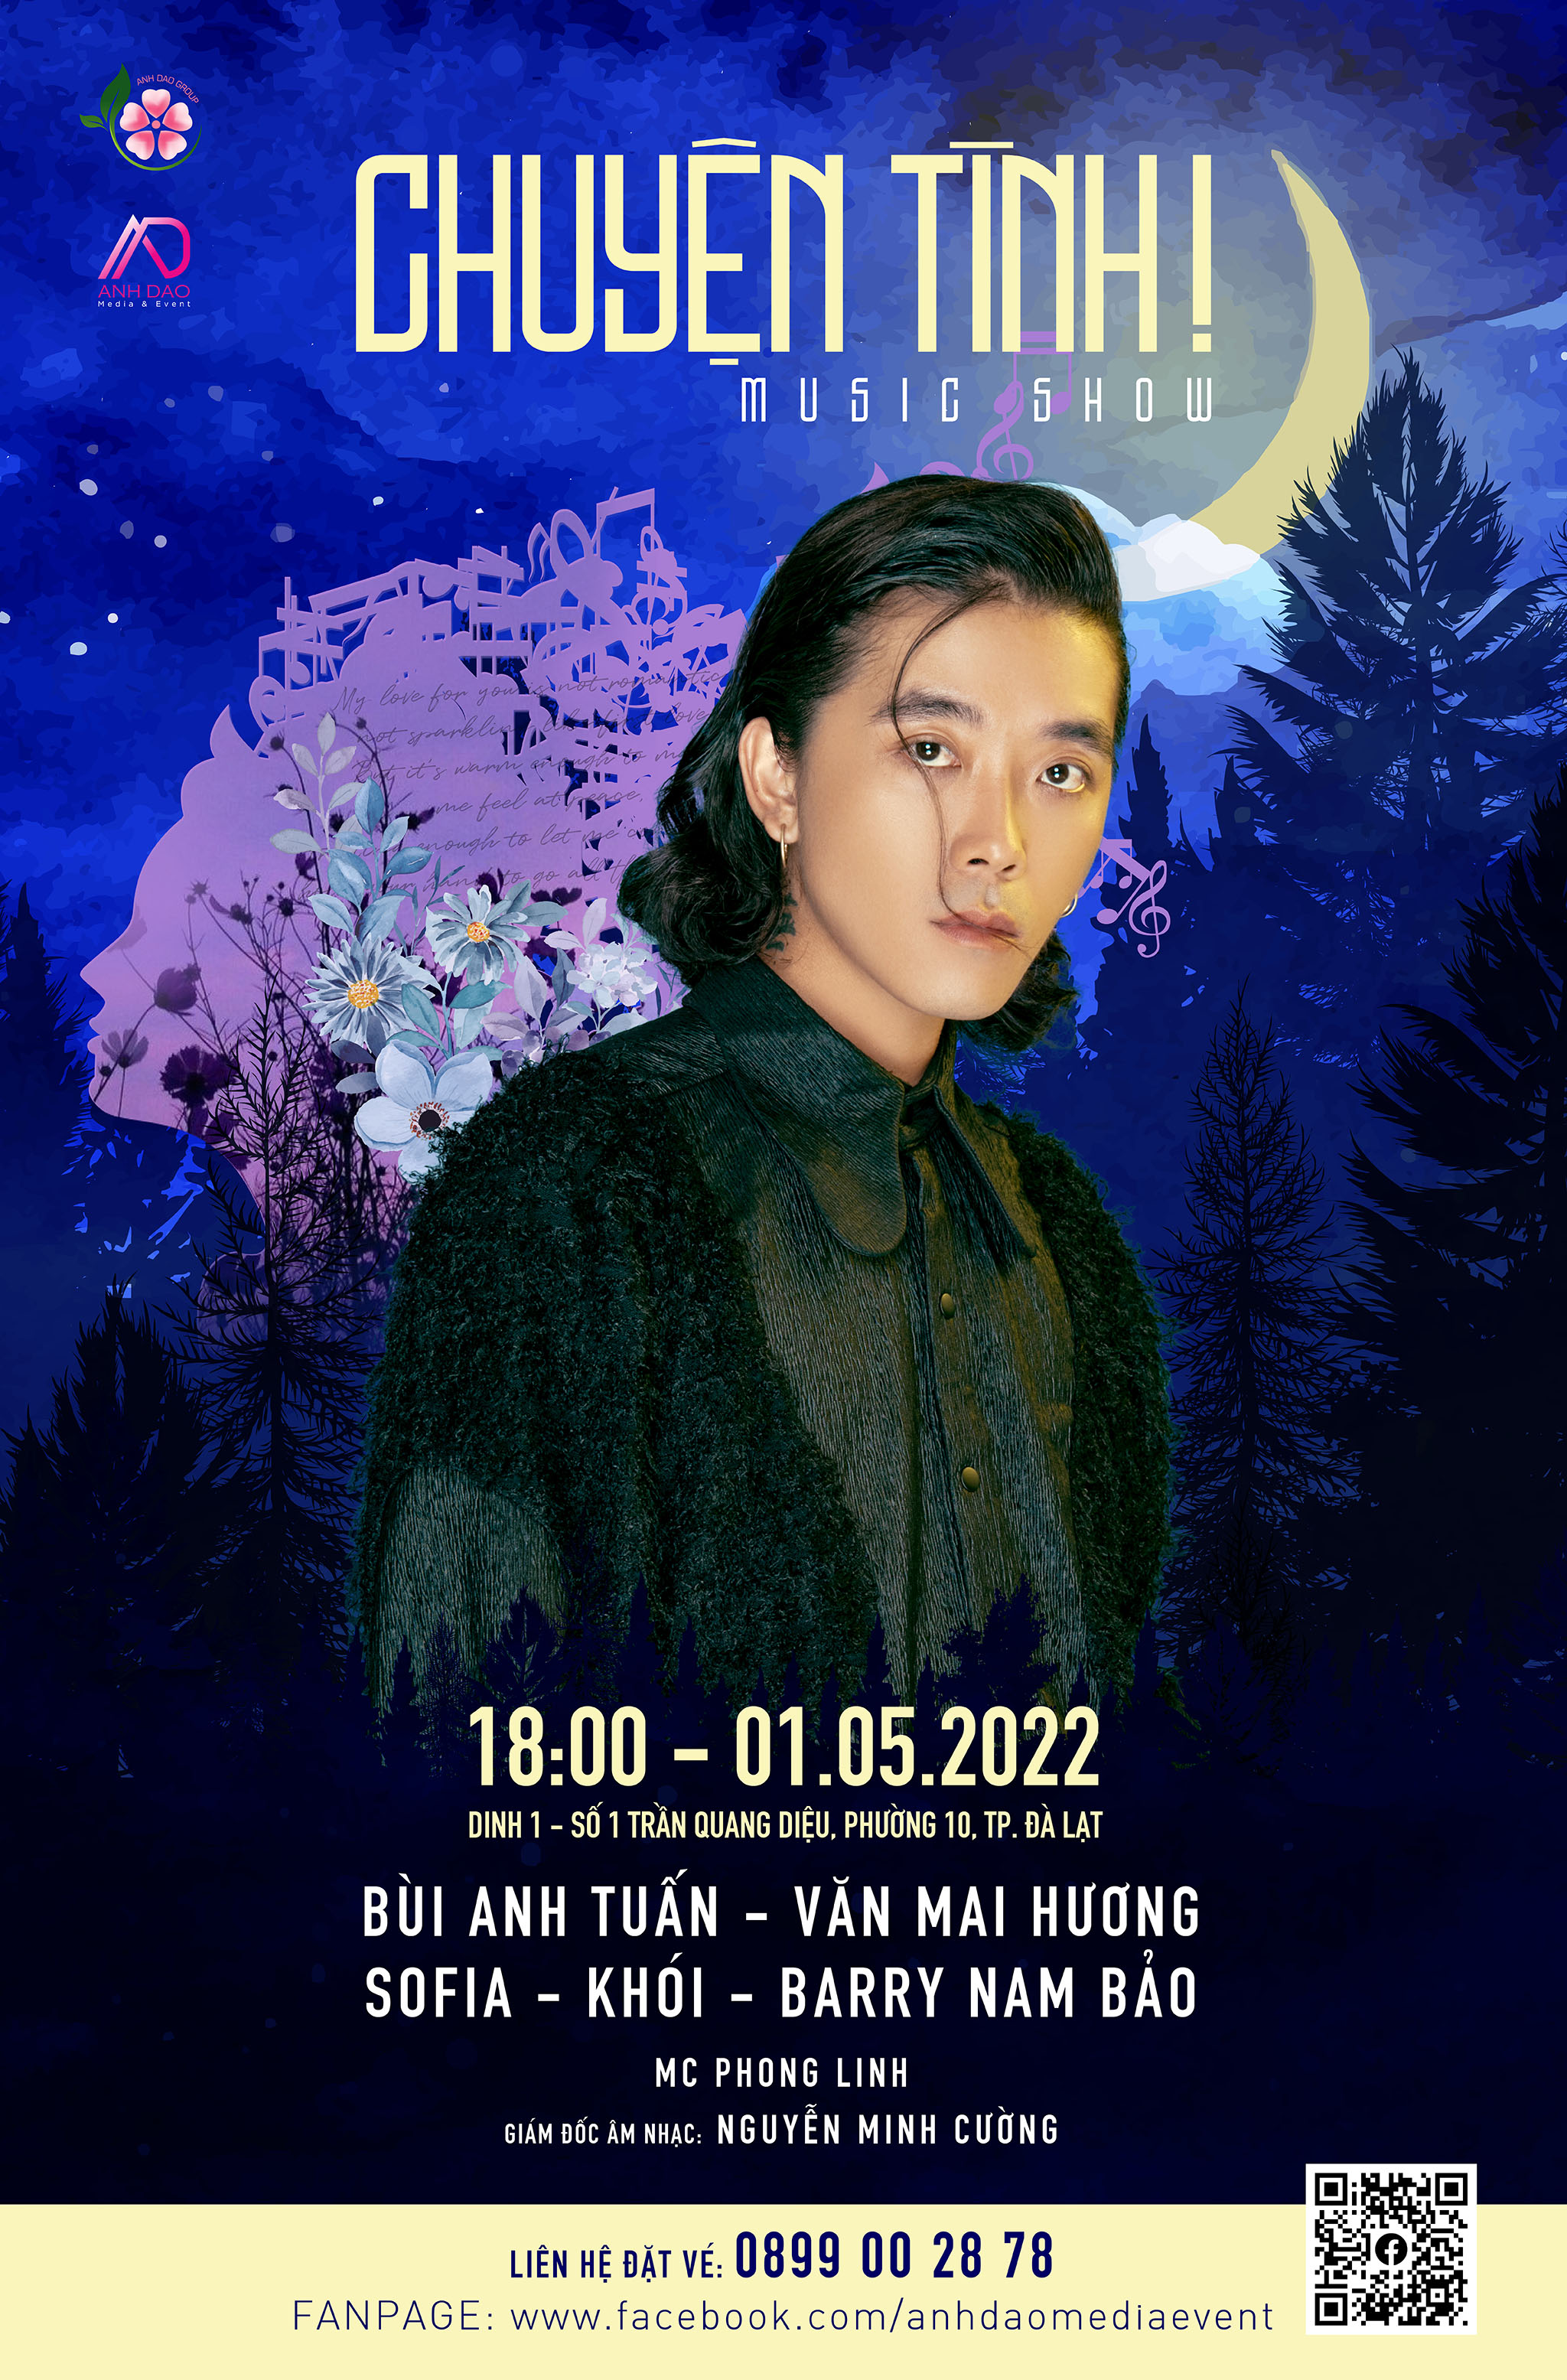 Bùi Anh Tuấn, Văn Mai Hương kết hợp kể chuyện tình trong show âm nhạc mới